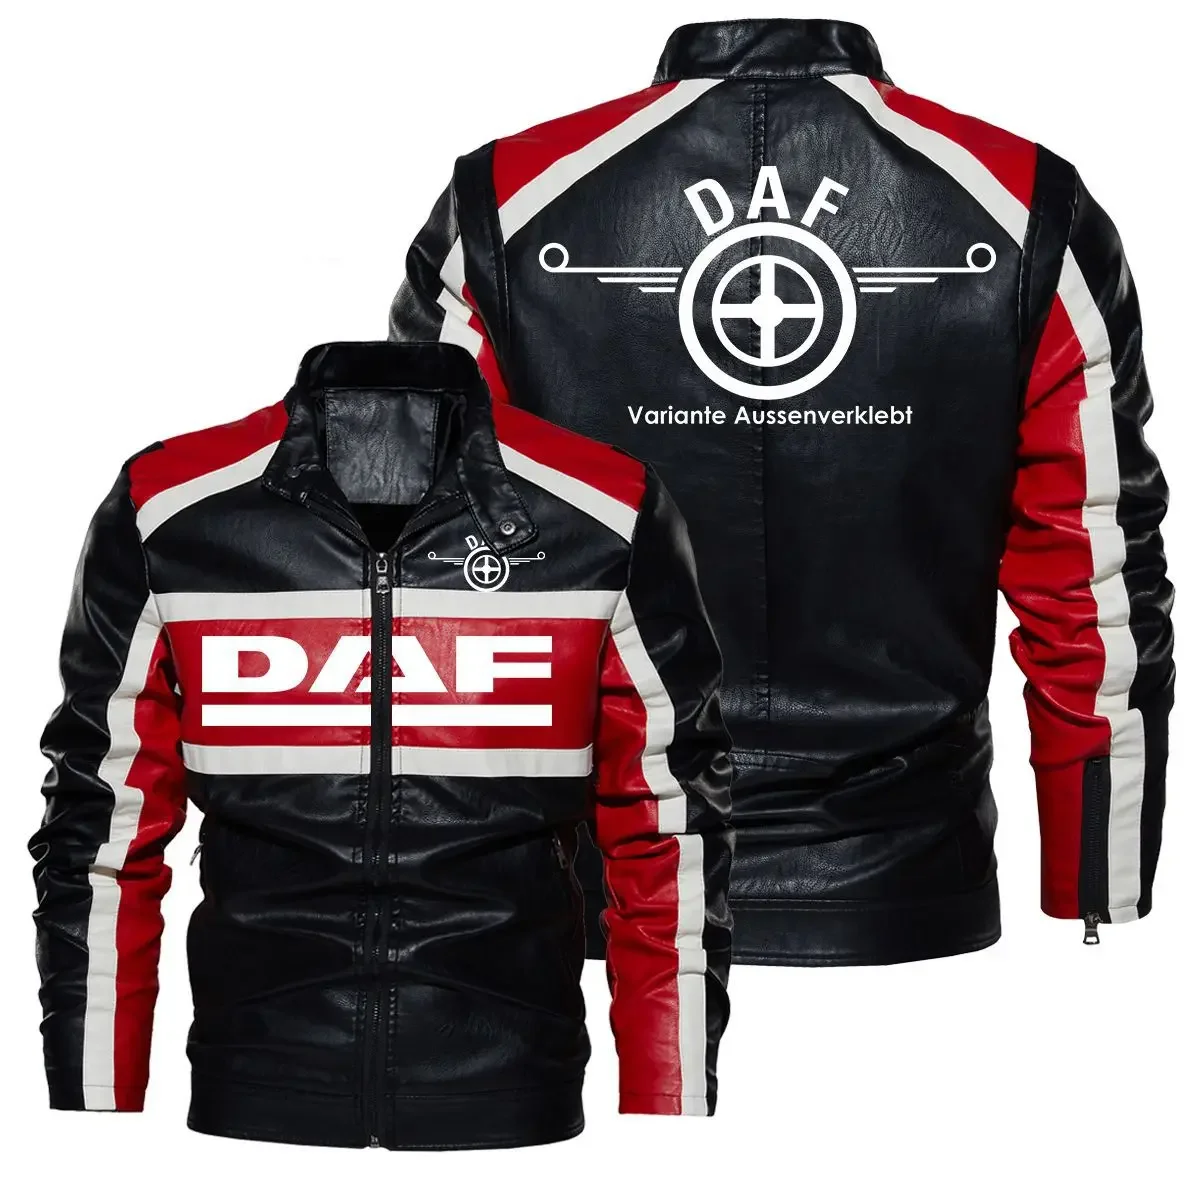 

Винтажная кожаная куртка с логотипом DAF, Мужская мотоциклетная куртка, Мужская Байкерская одежда, весна-осень